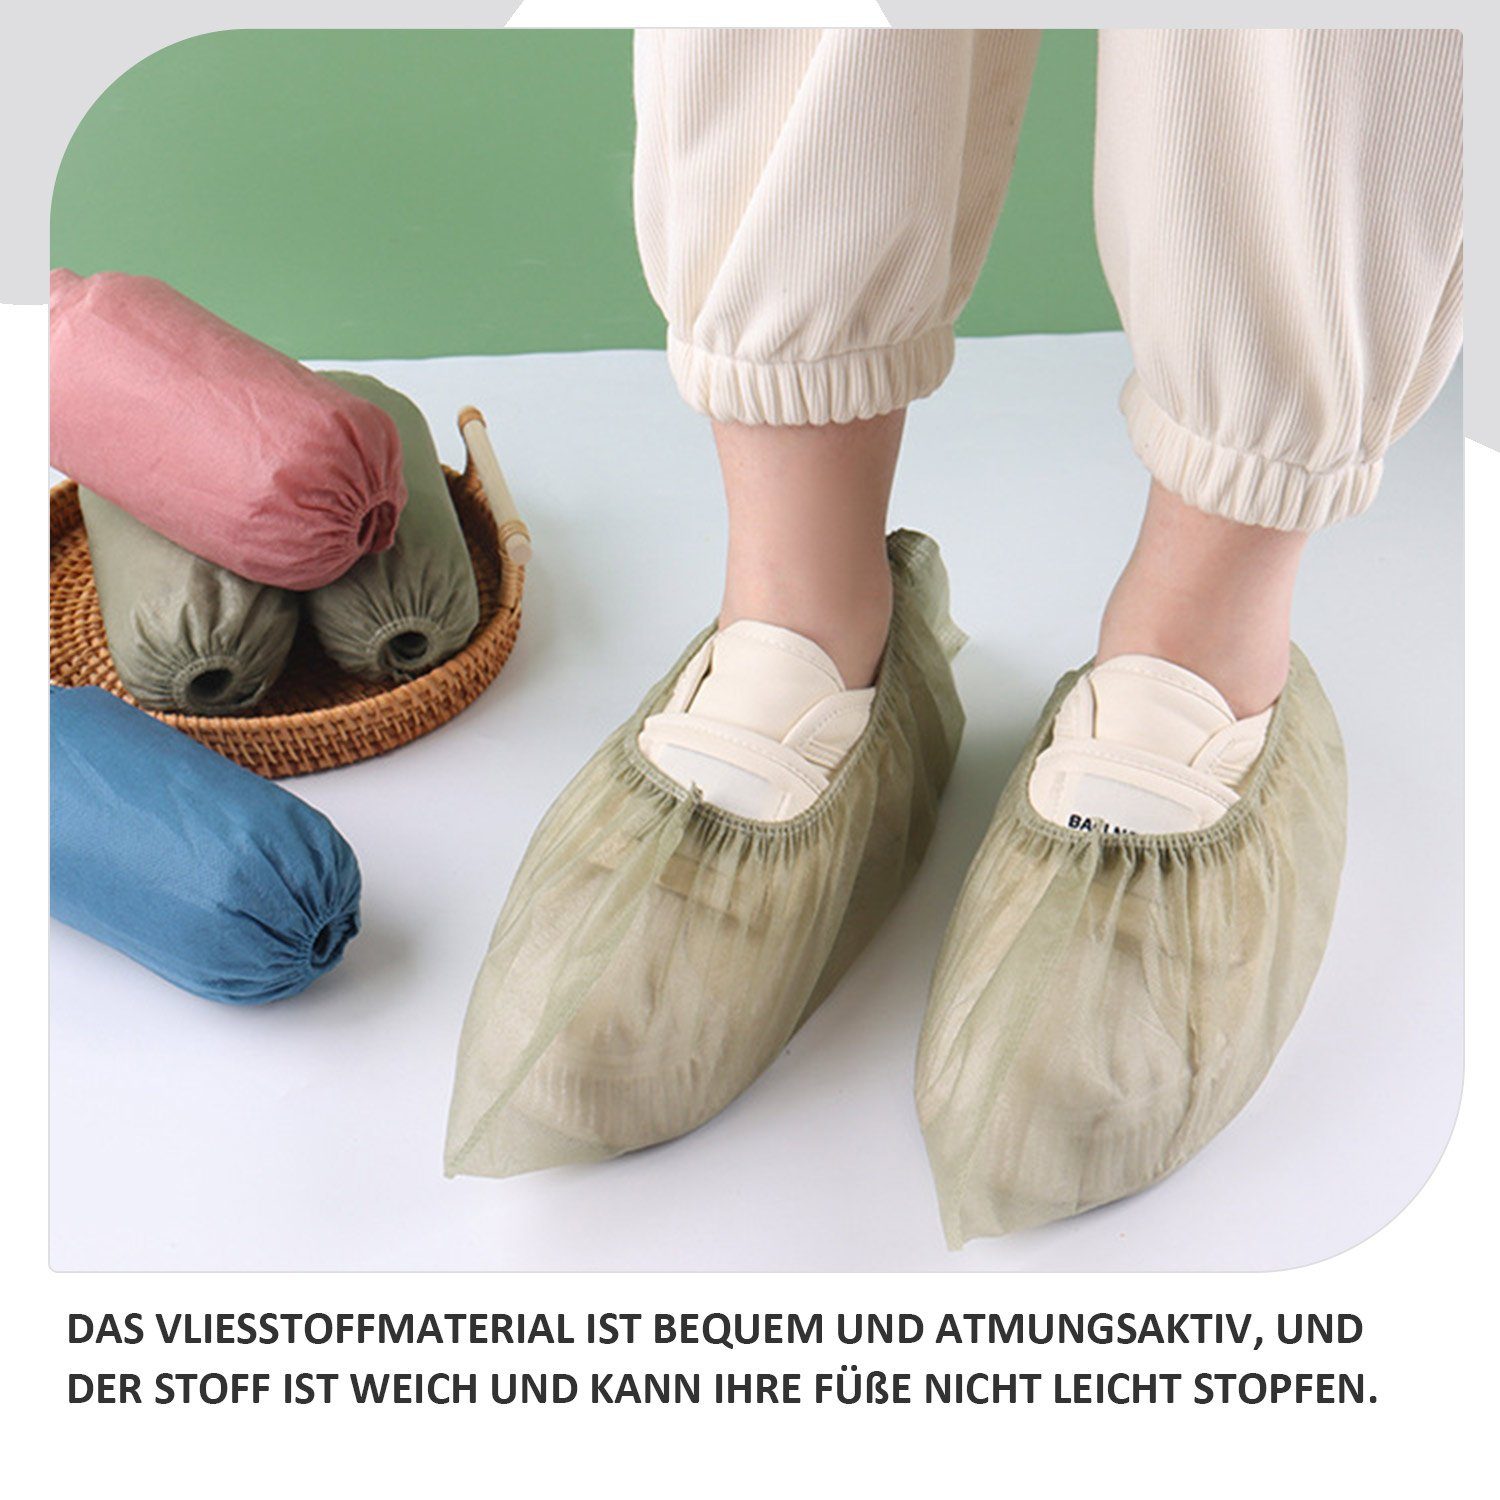 rutschfest Einweg-Stiefel Schuhüberzieher Schuhüberzieher Daisred rosa+grün+blau 100 Stück hygienische